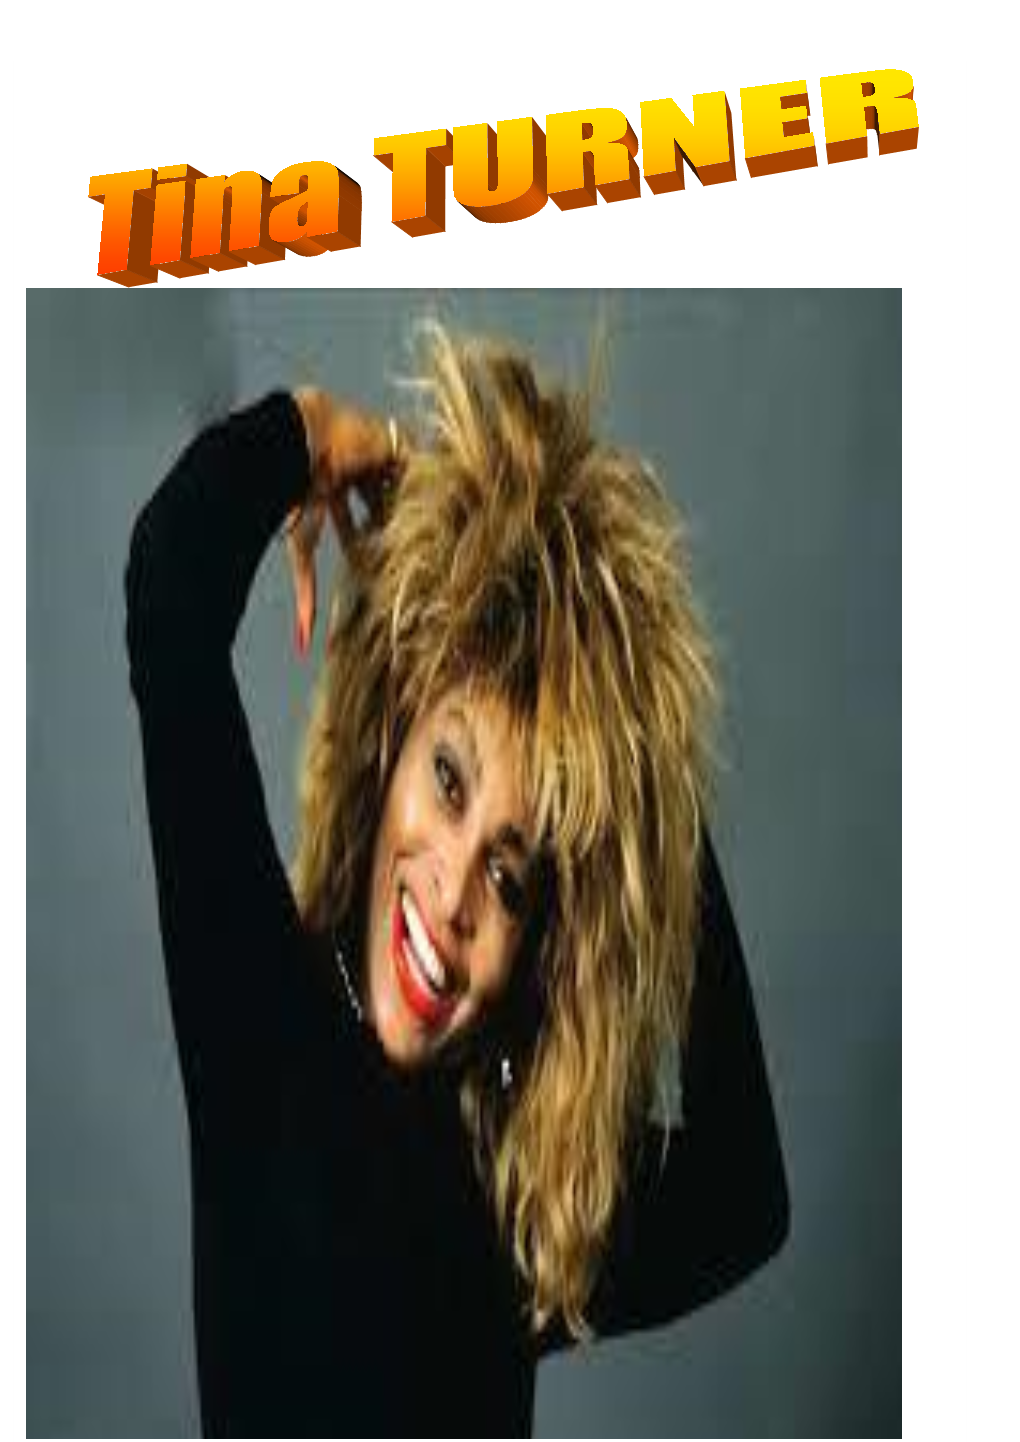 C'est Le 26 Novembre 1939 À Nutbush Dans Le Tennessee Que Naît La Future Star De Musique Planétaire Tina Turner, De Son Vrai Nom Anna Mae Bullock